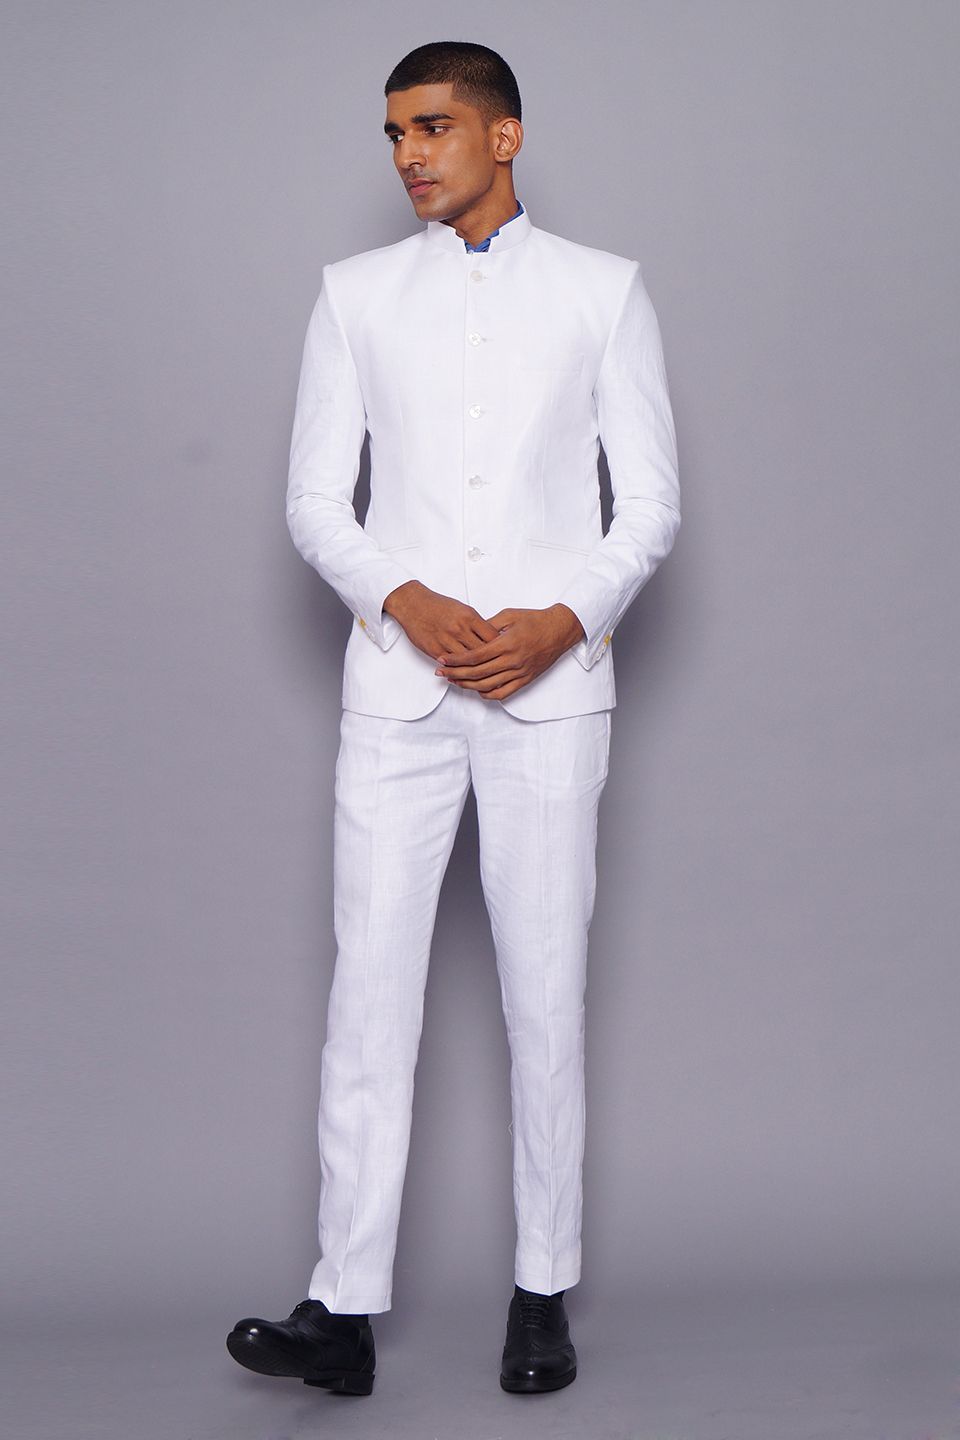 Men white suits